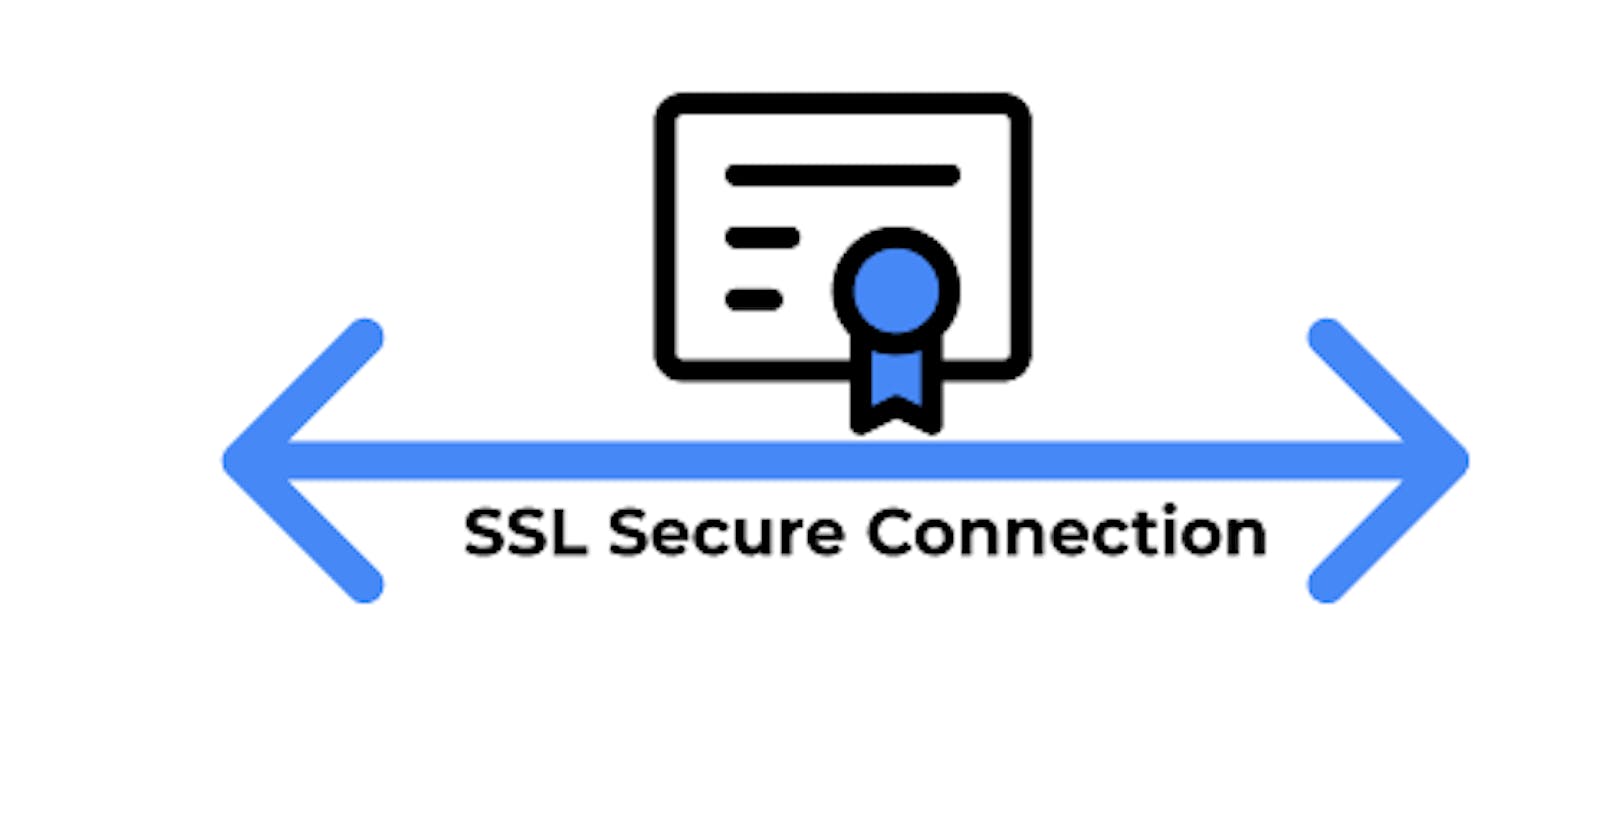 A (quick) Technical Breakdown Of SSL/TLS